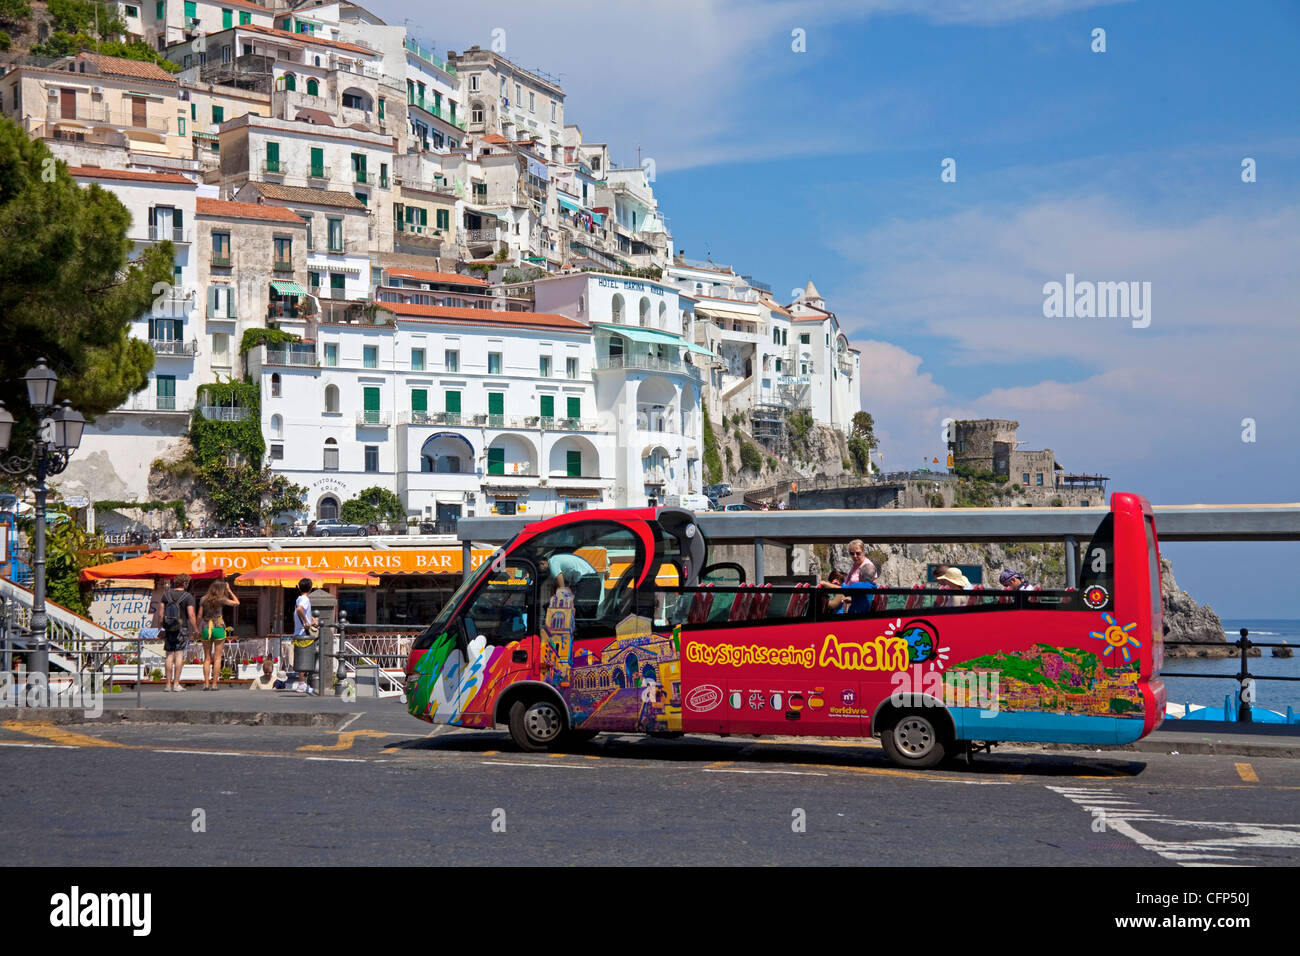 Turismo con un autobús turístico, Amalfi, Costa de Amalfi, sitio del Patrimonio Mundial de la Unesco, la Región de Campania, Italia, el mar Mediterráneo, Europa Foto de stock